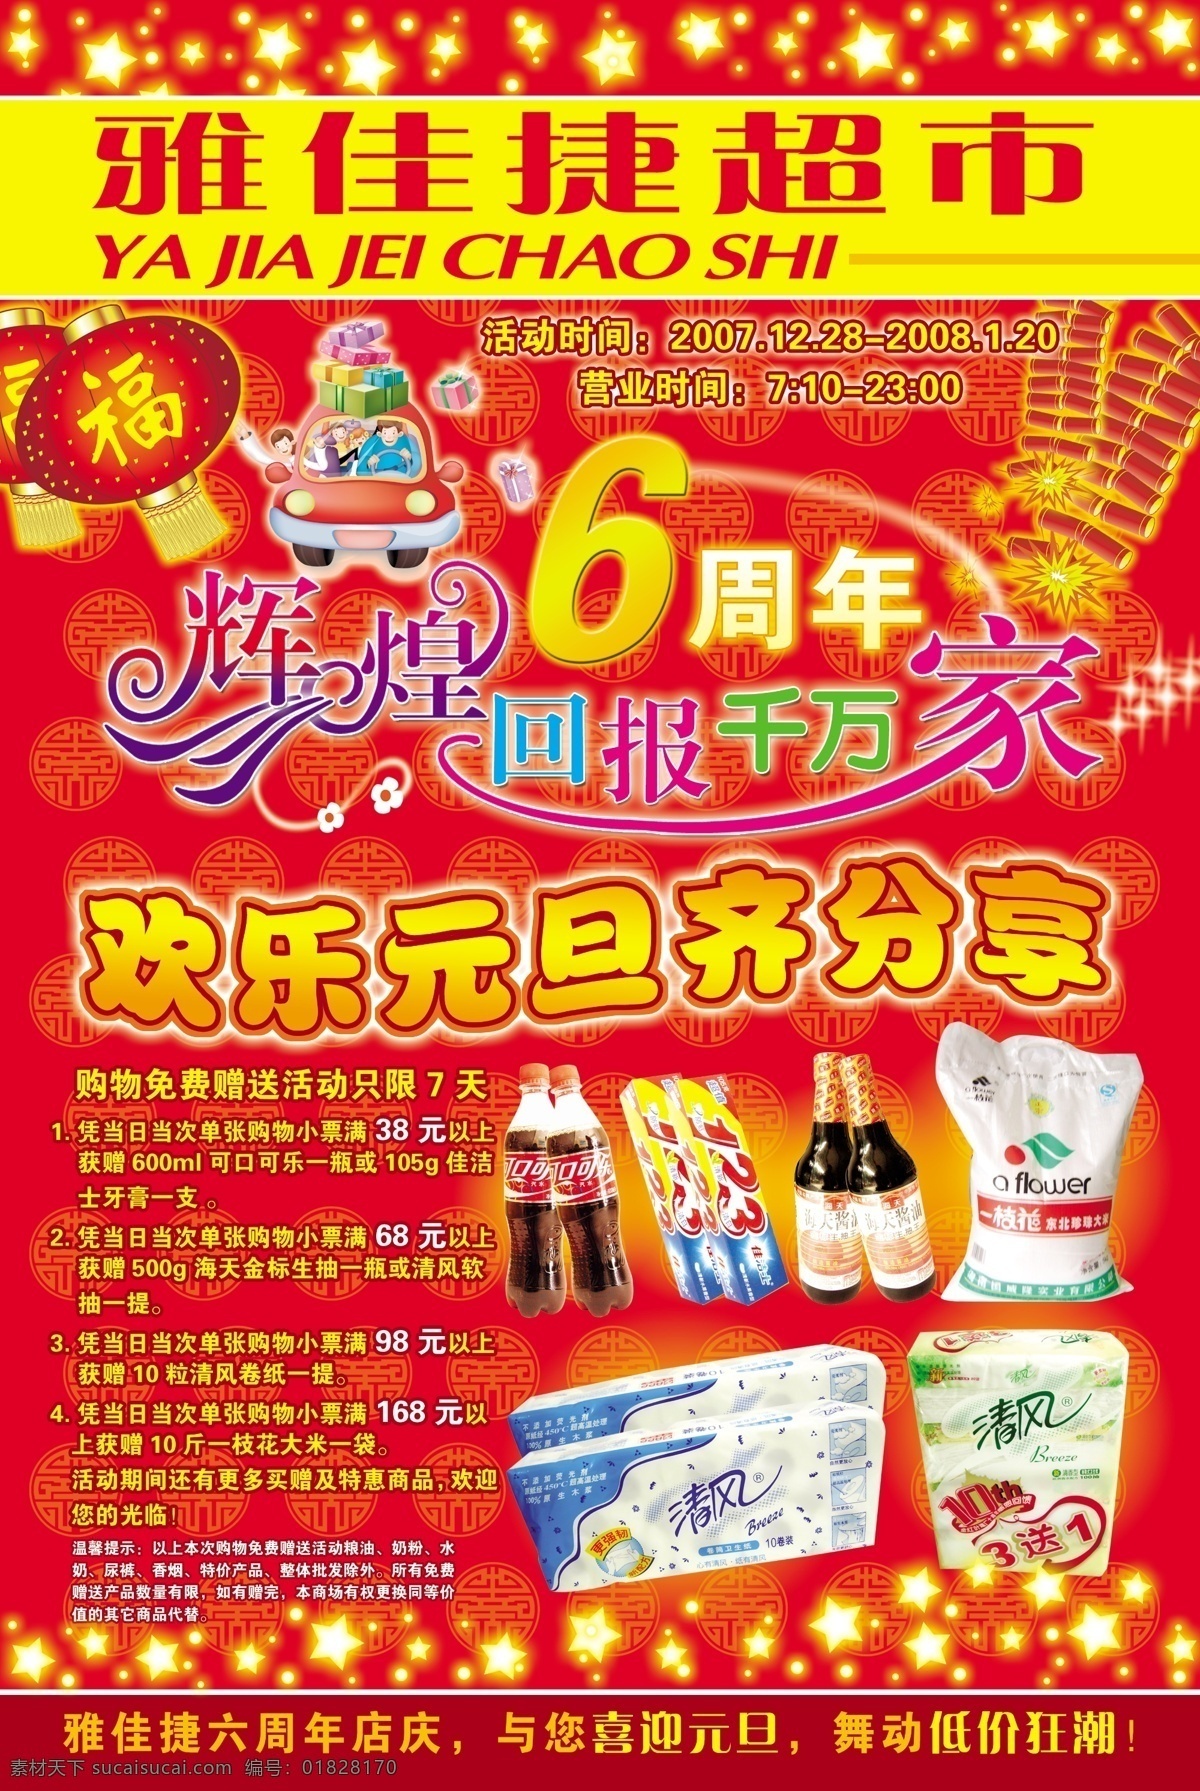 6周年庆典 超市促销海报 雅佳 捷 六 周年 dm 封面